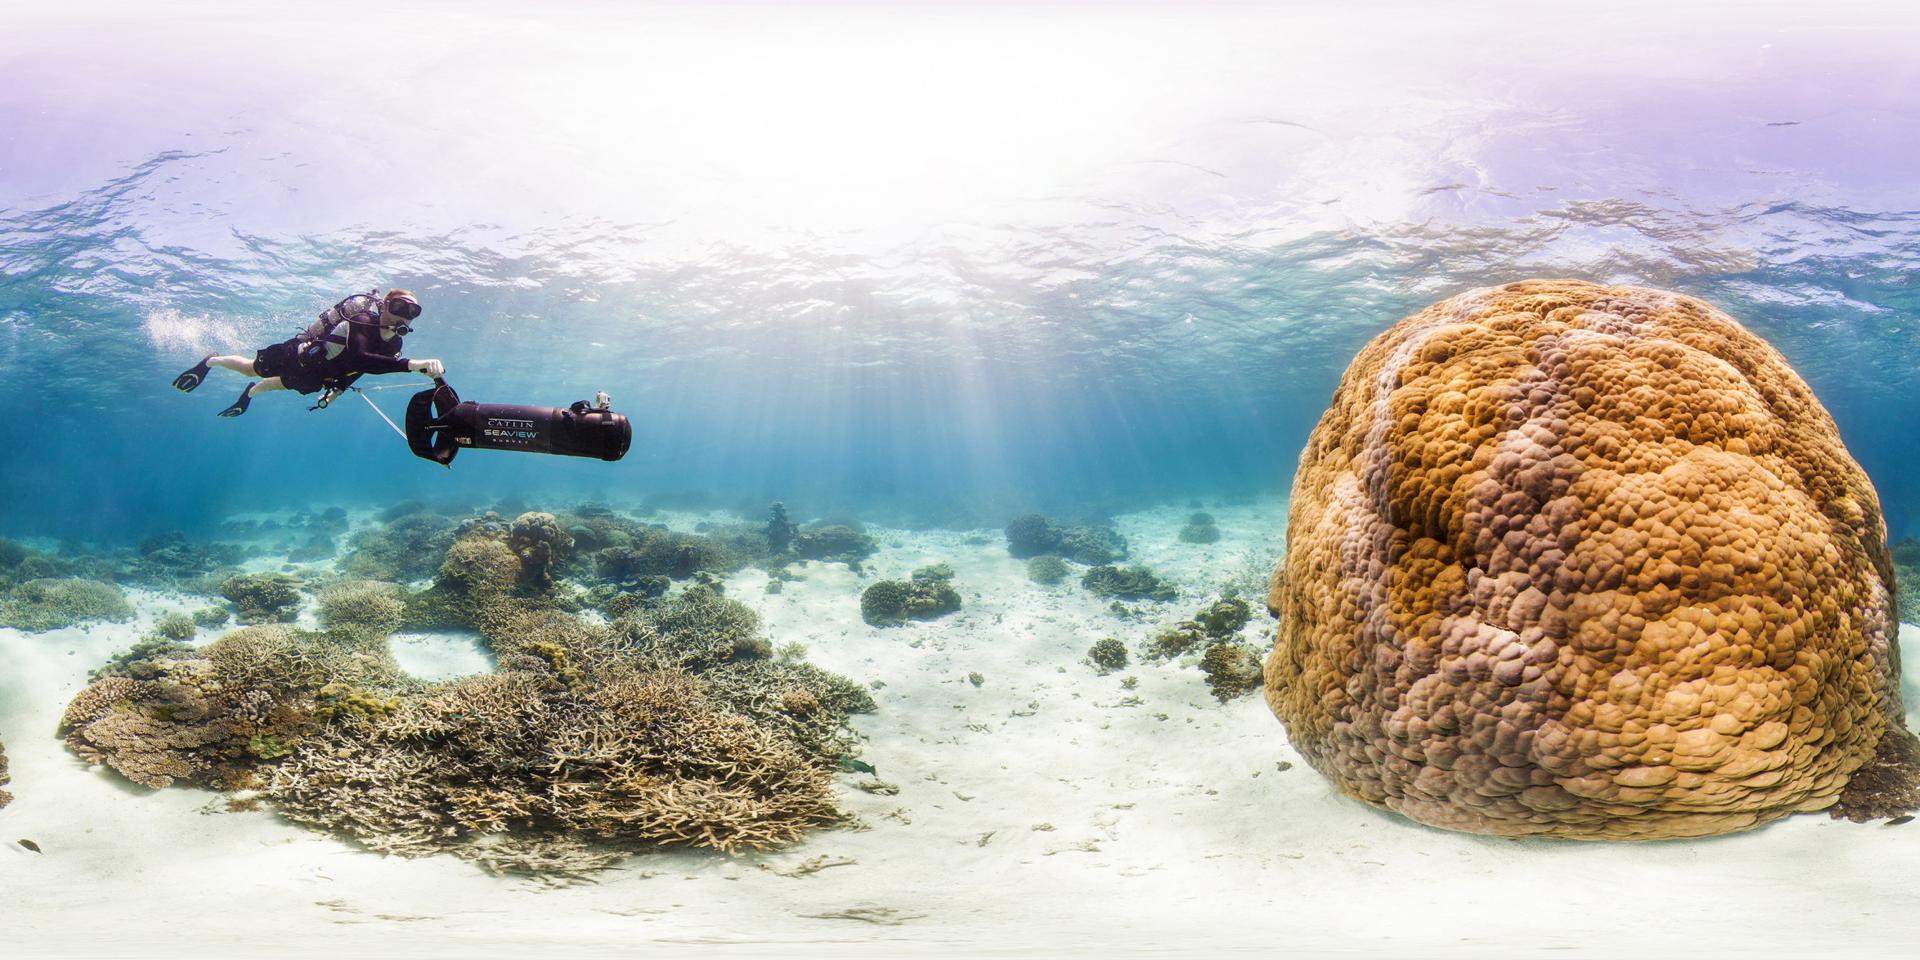 Philippe Cousteau en plongée avec le Catlin Seaview Survey en Australie sur le récif corallien de&nbsp;Wilson Island. © Catlin Seaview Survey